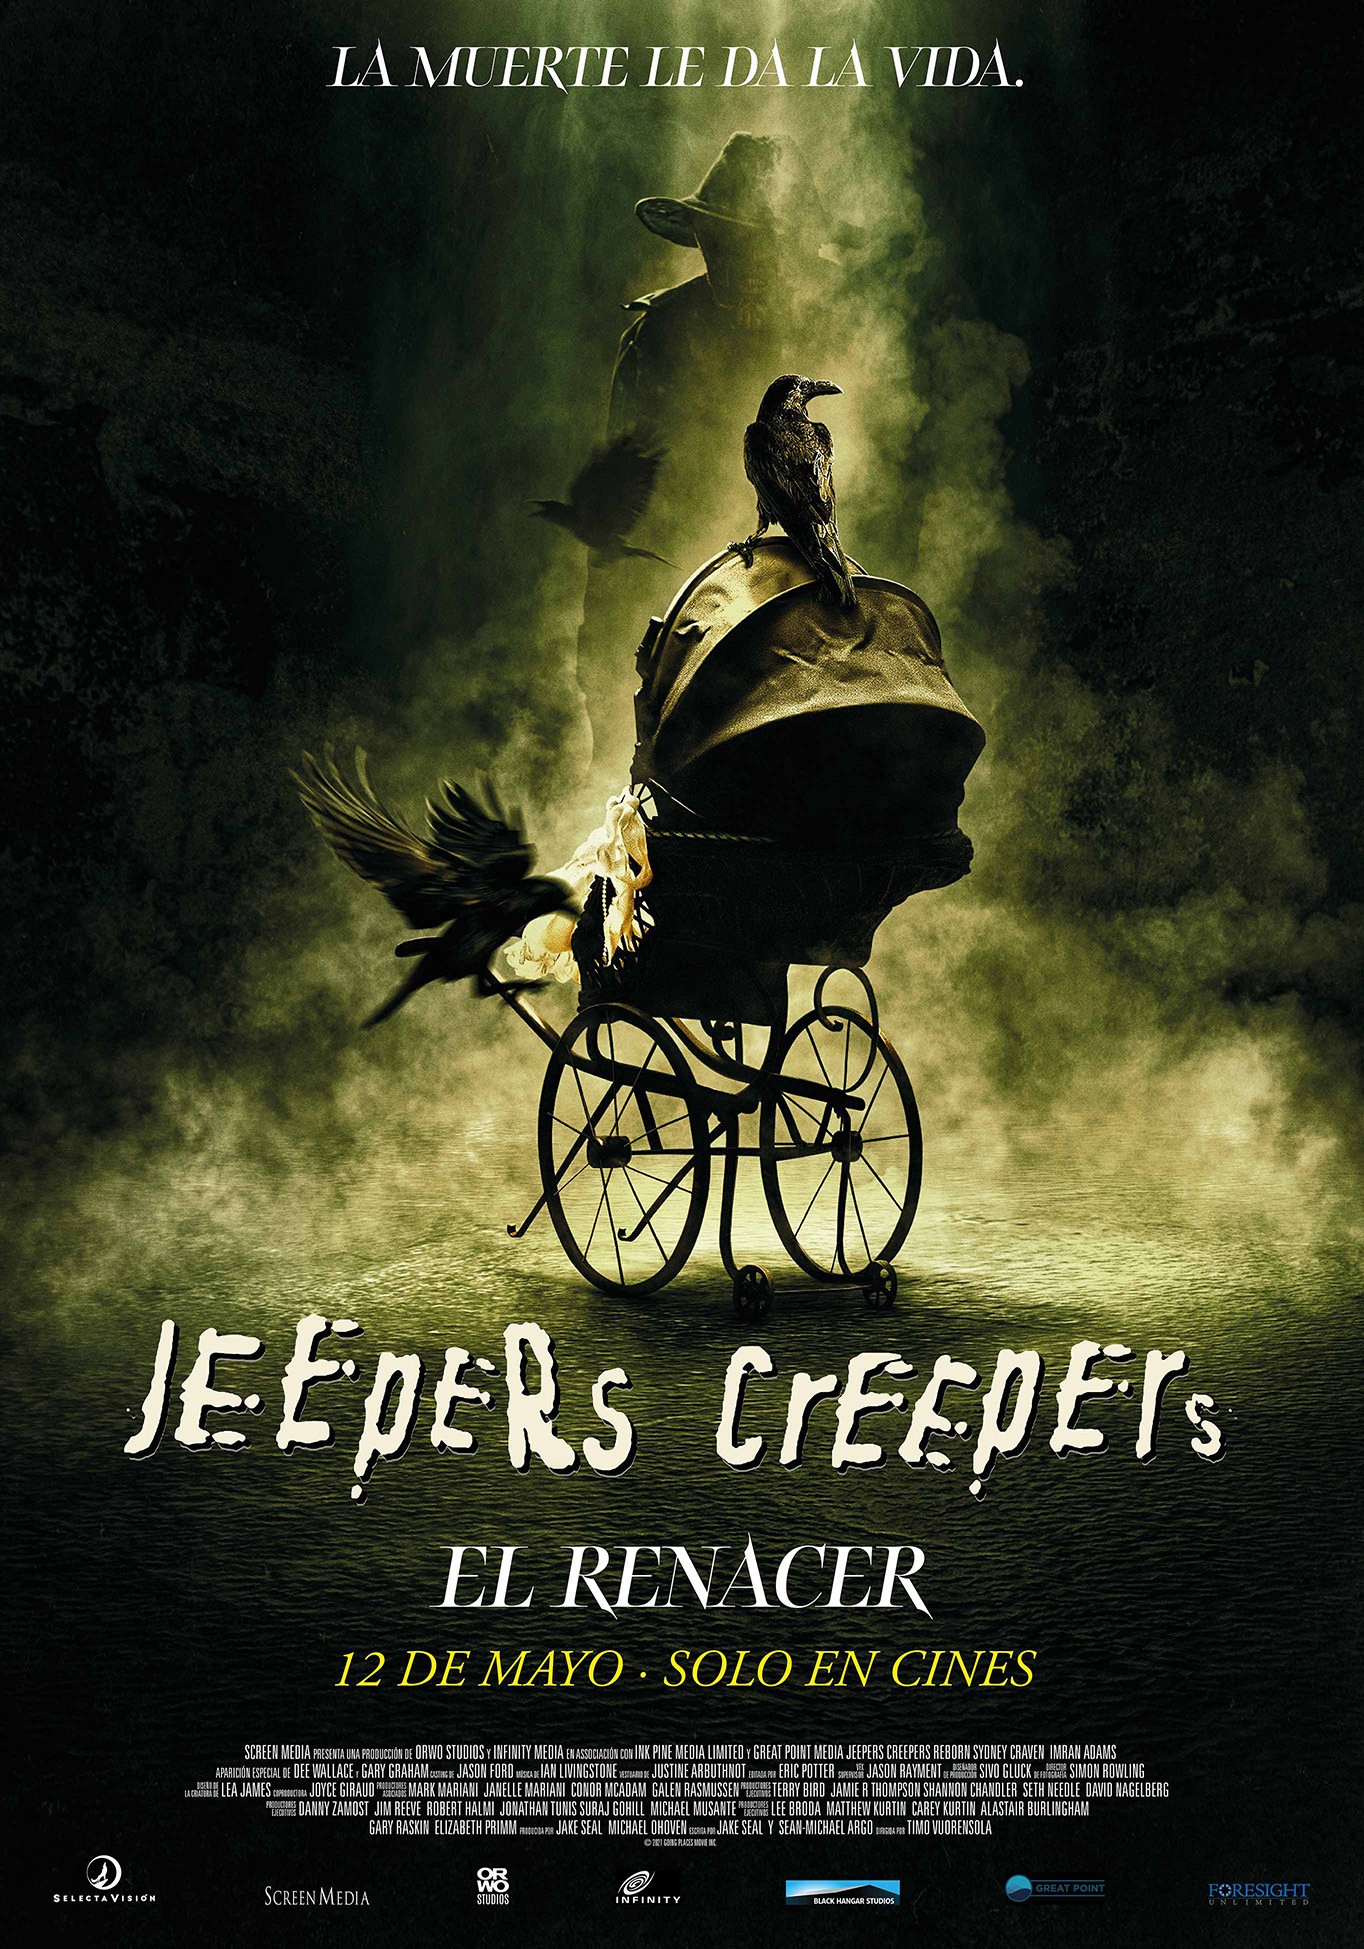 'Jeepers Creepers': El Renacer: a vueltas con el mal de siempre